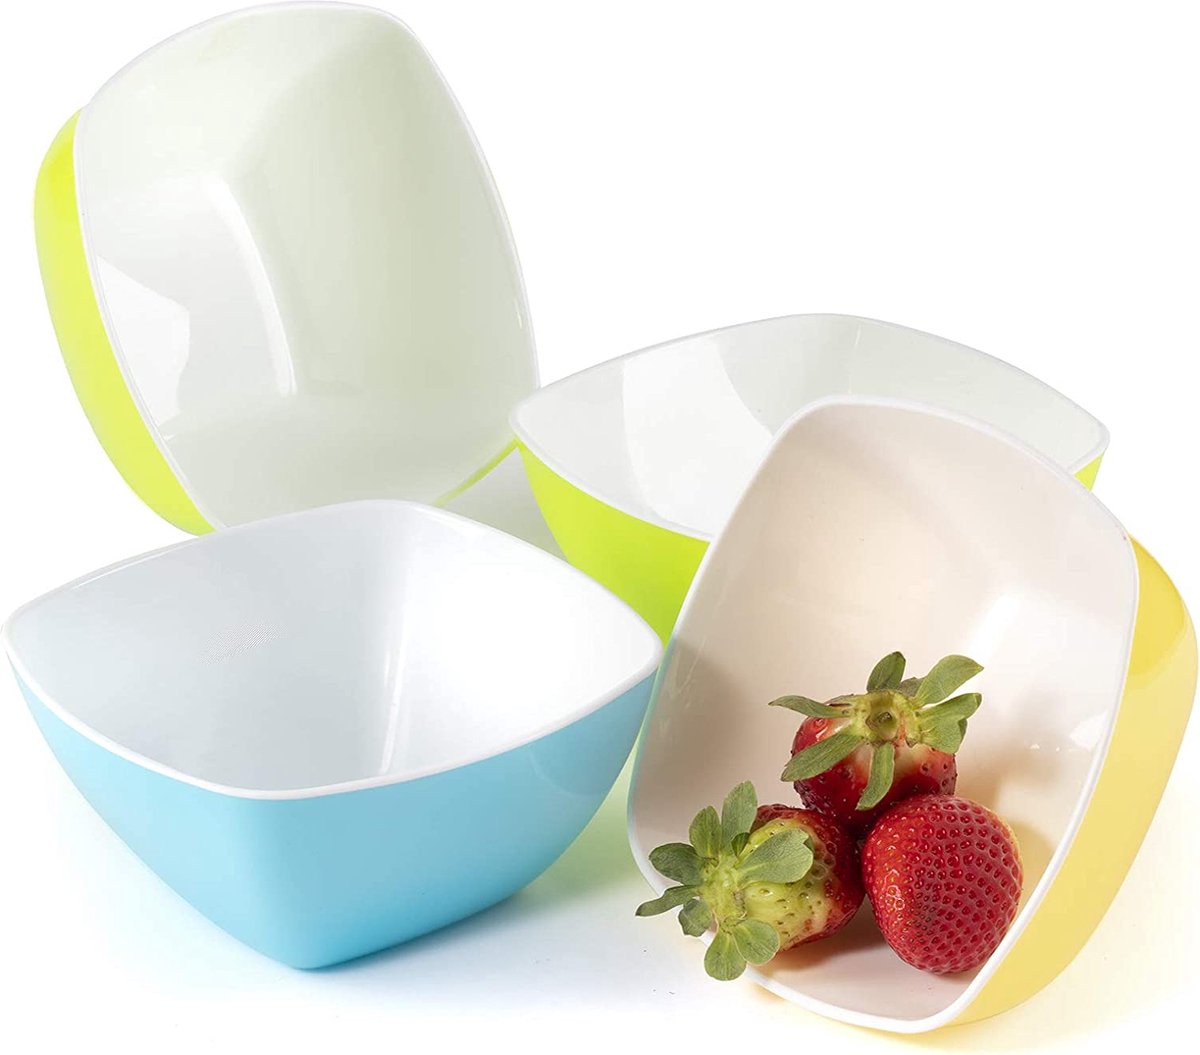 Maxi Nature Cereal Bowl Set van 4 - Magnetron, Vaatwasser & Vriezer Veilig - Onbreekbaar, Lichtgewicht, Duurzame Plastic Kommen - Gebruik voor Salade, Soep, Dessert & Meer - Standaard Maat